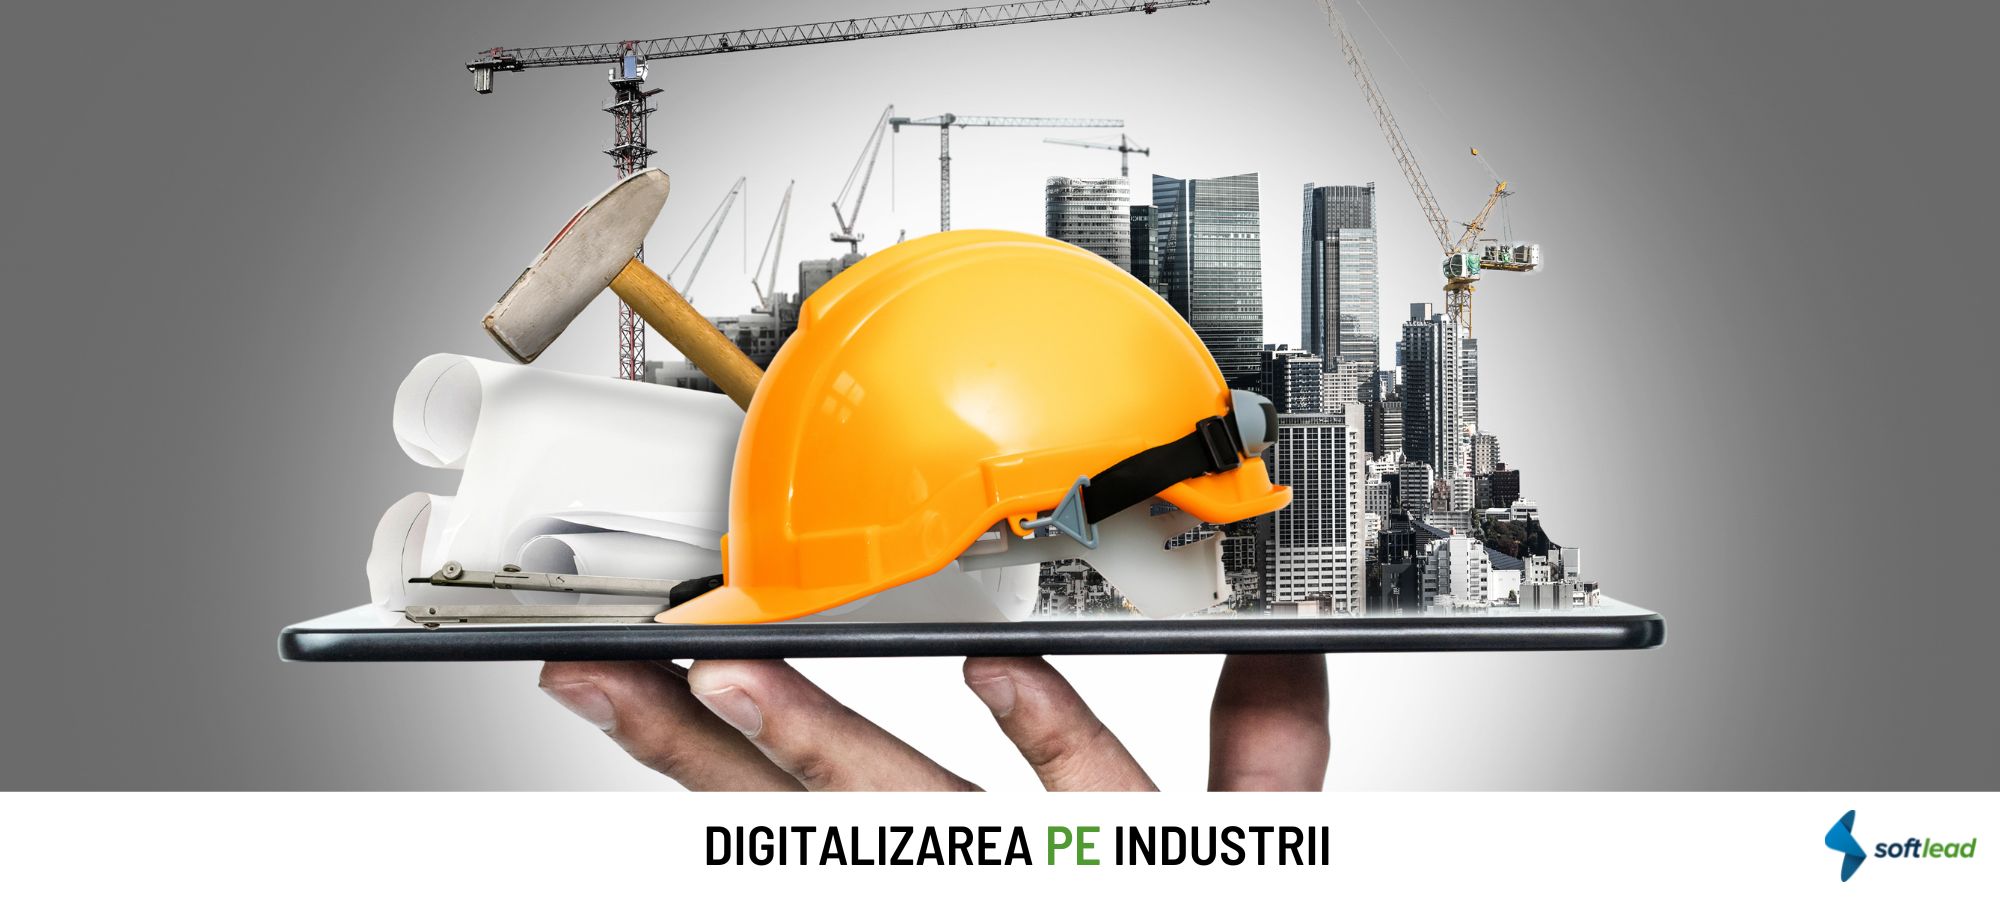 Softlead lansează o campanie integrată de digitalizare a companiilor din industriile de Construcții, Real Estate & Mentenanță